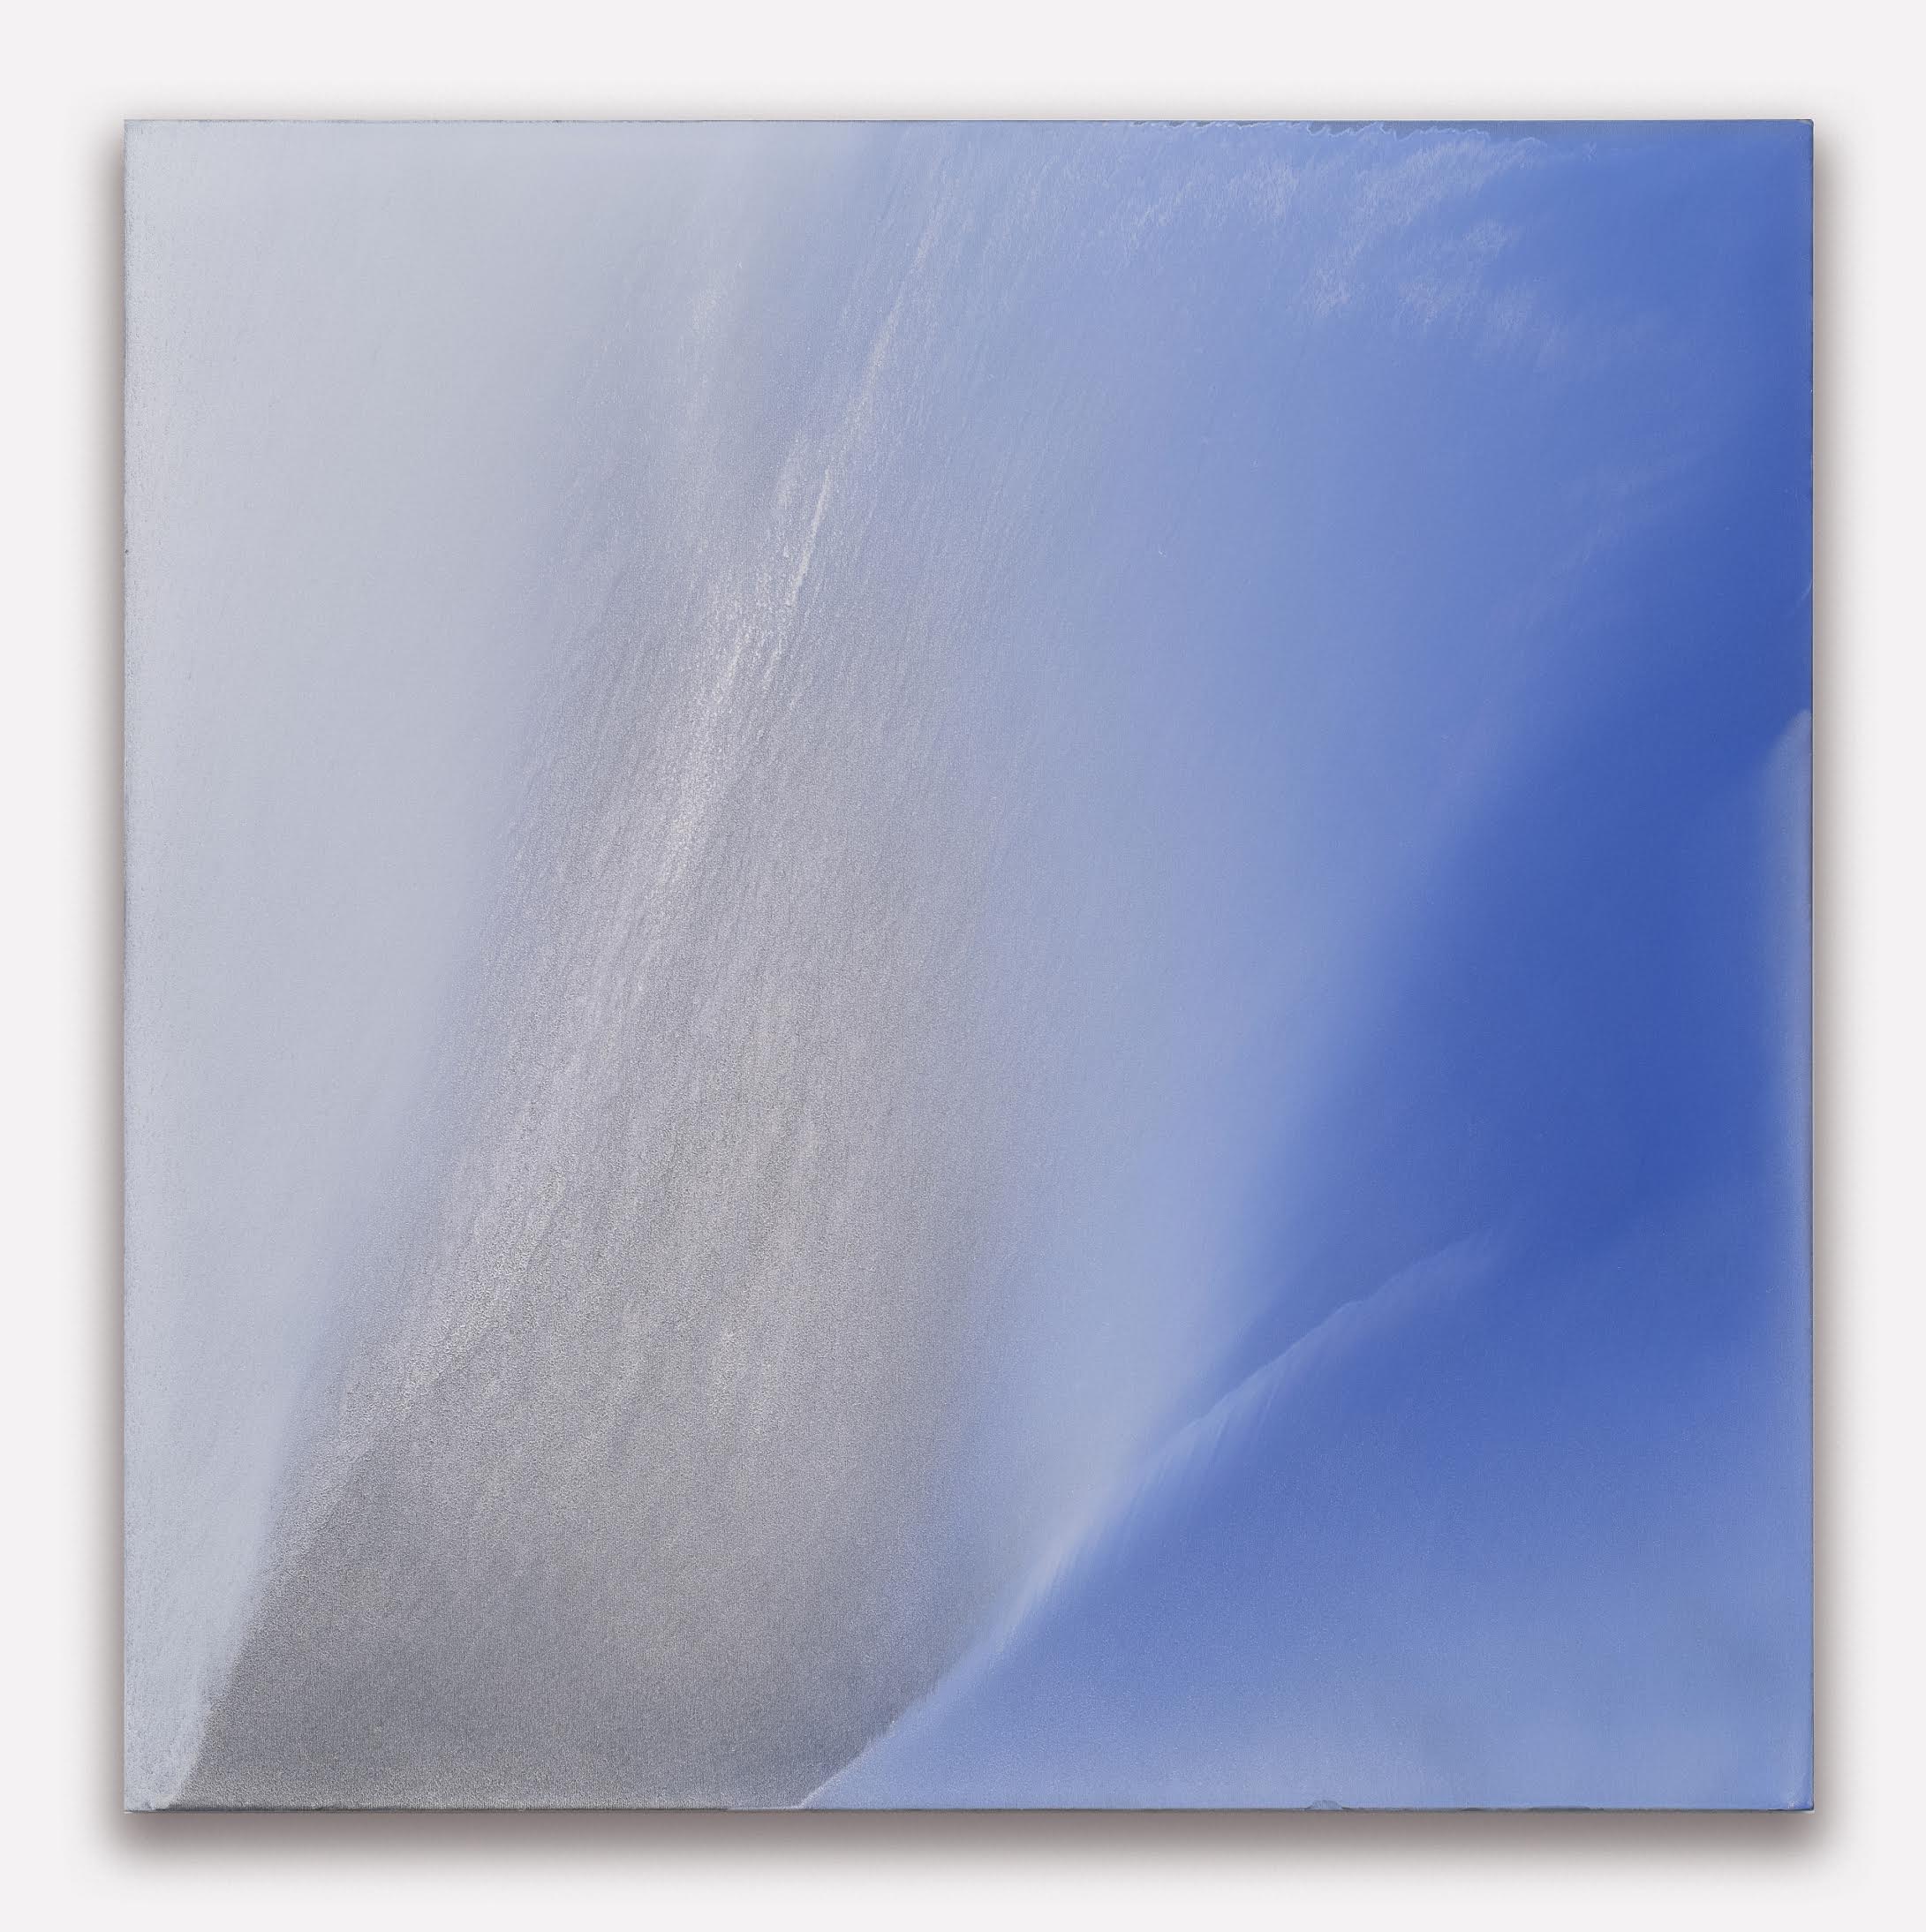 "Untitled (un volo) 2021, olio e polvere di metalli su tela, 150 x 150 cm